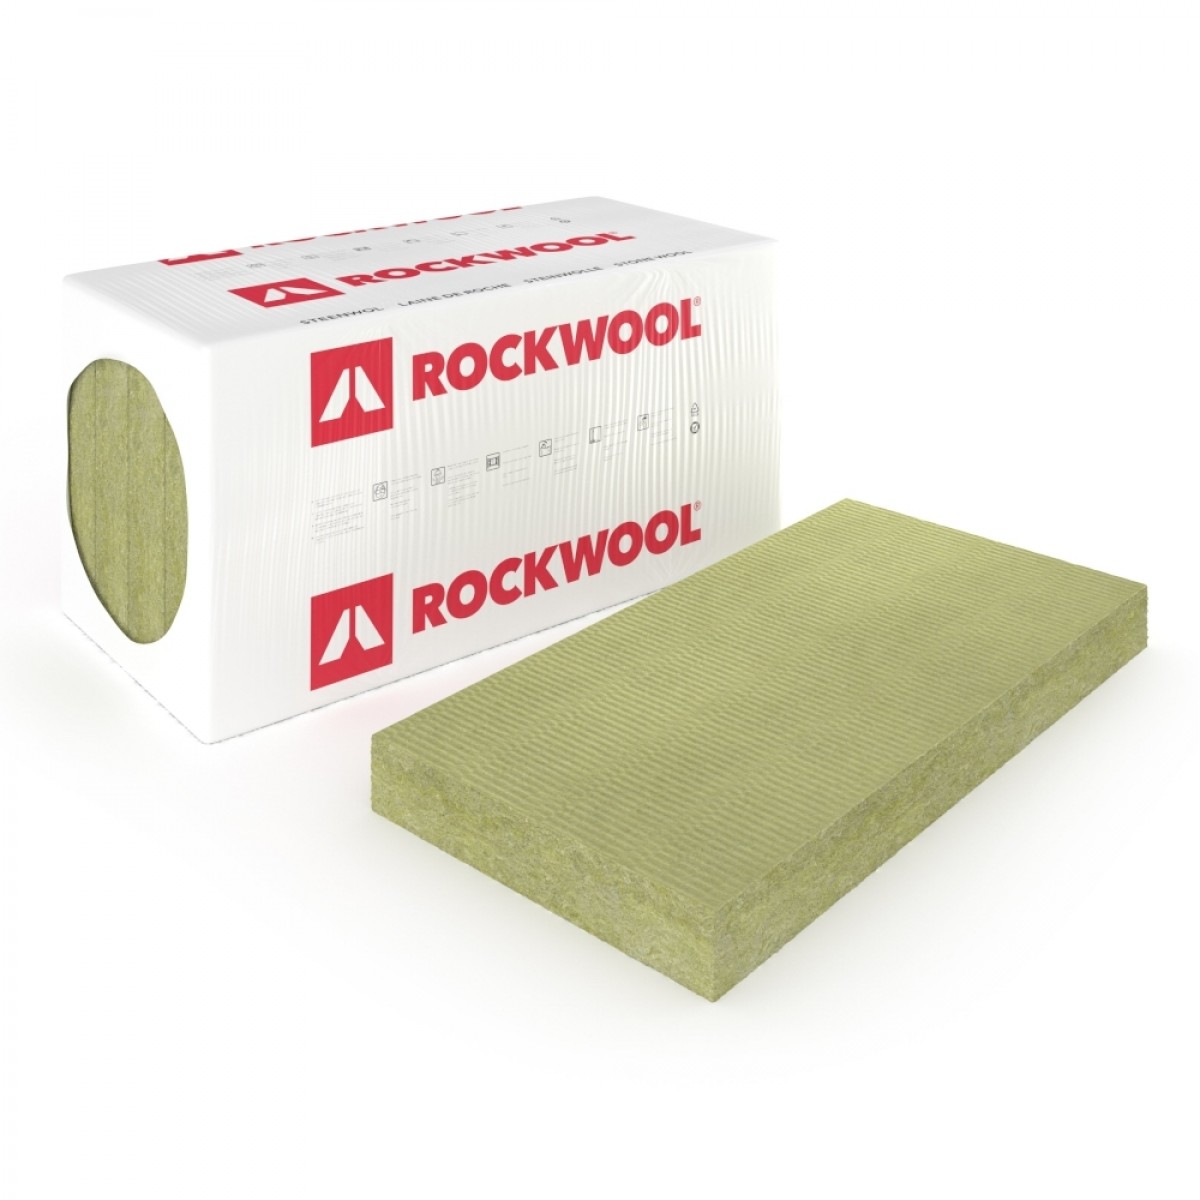 toon Kerel Onderhoudbaar Rockwool RockSono Solid 120mm online kopen | Bouwkampioen